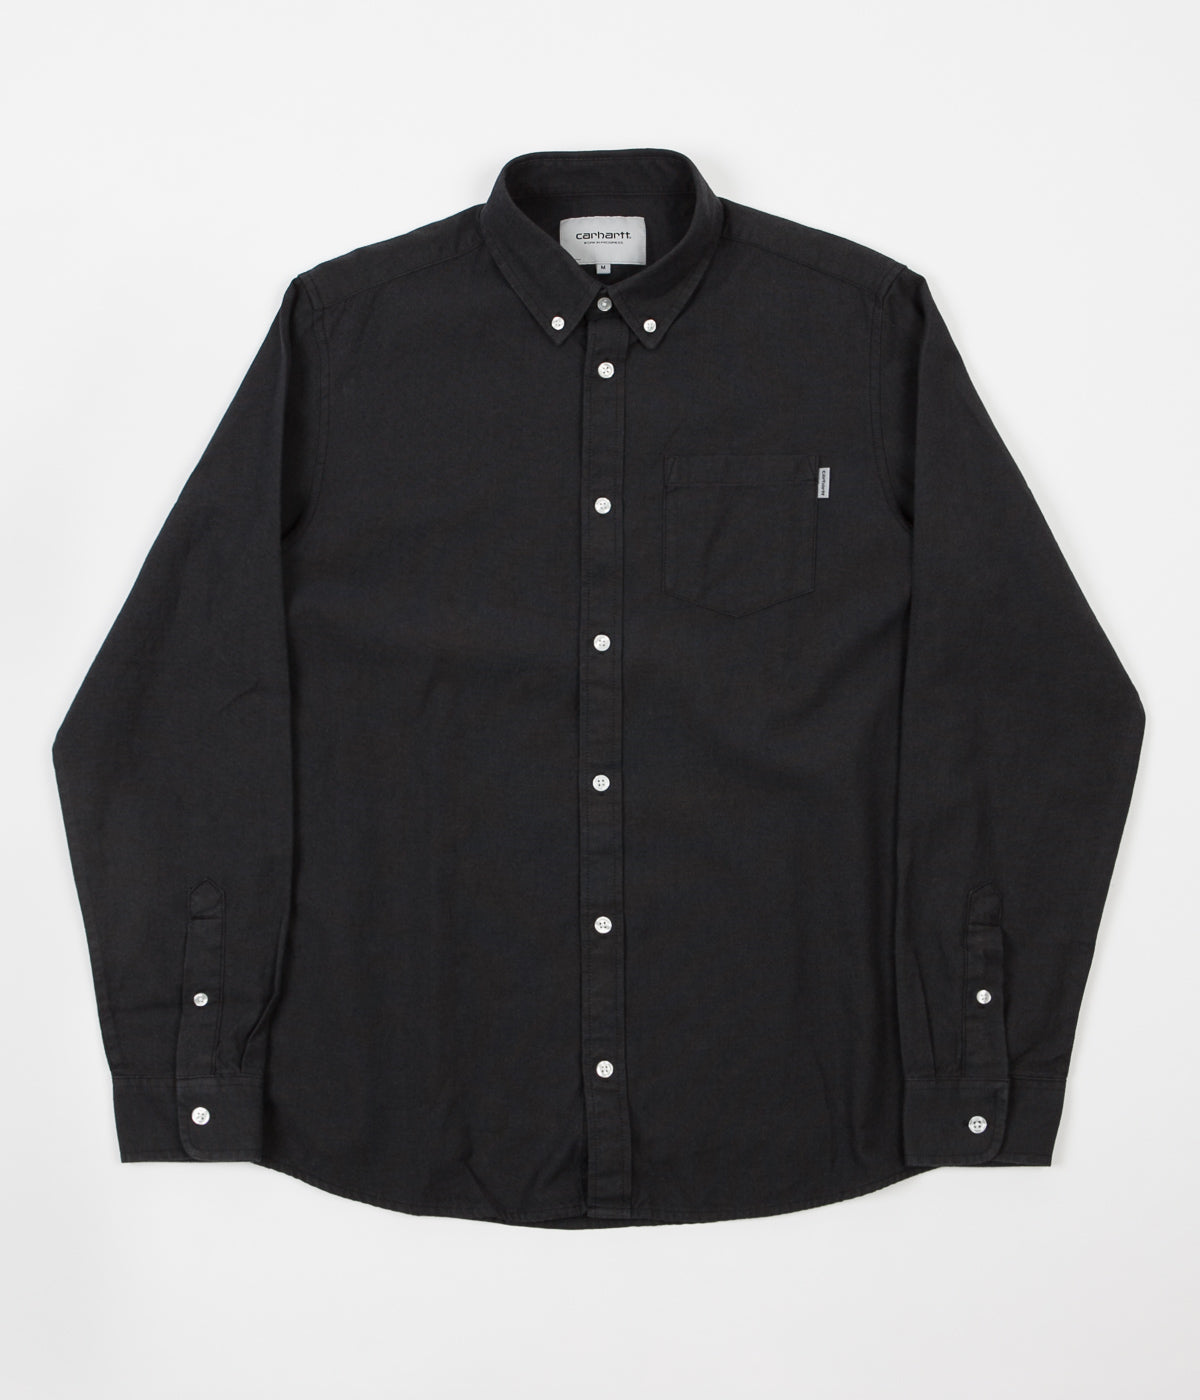 Carhartt Dalton Shirt - Black / Blacksmith | Flatspot